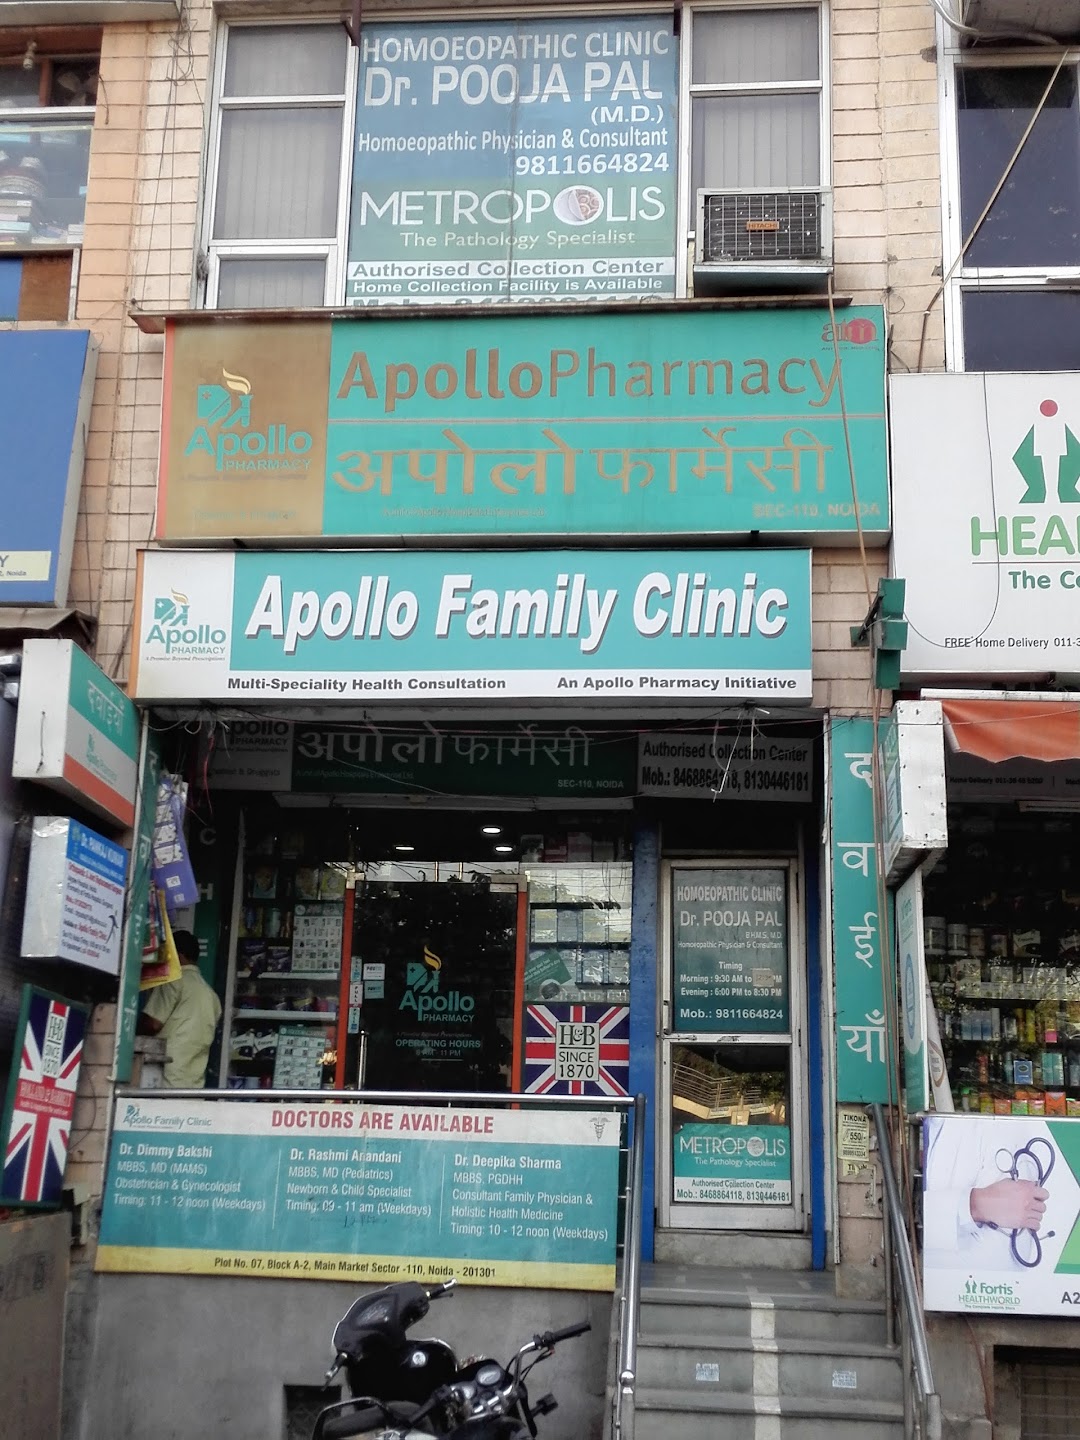 Apollo Family Clinic